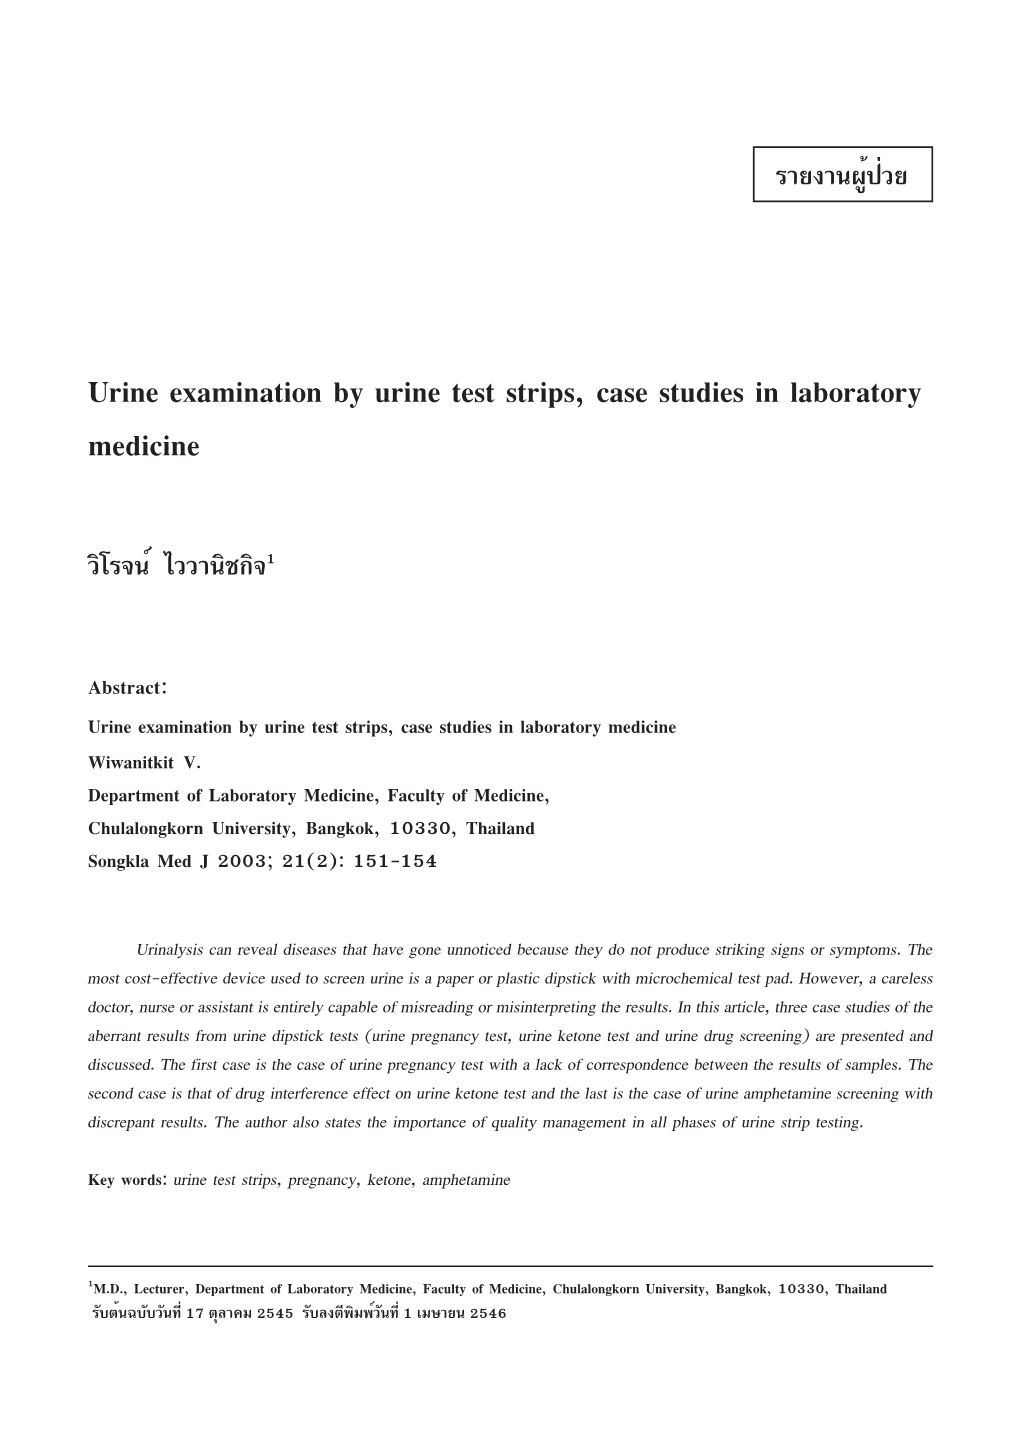 Urine Examination by Urine Test Strips, Case Studies in Laboratory Medicine